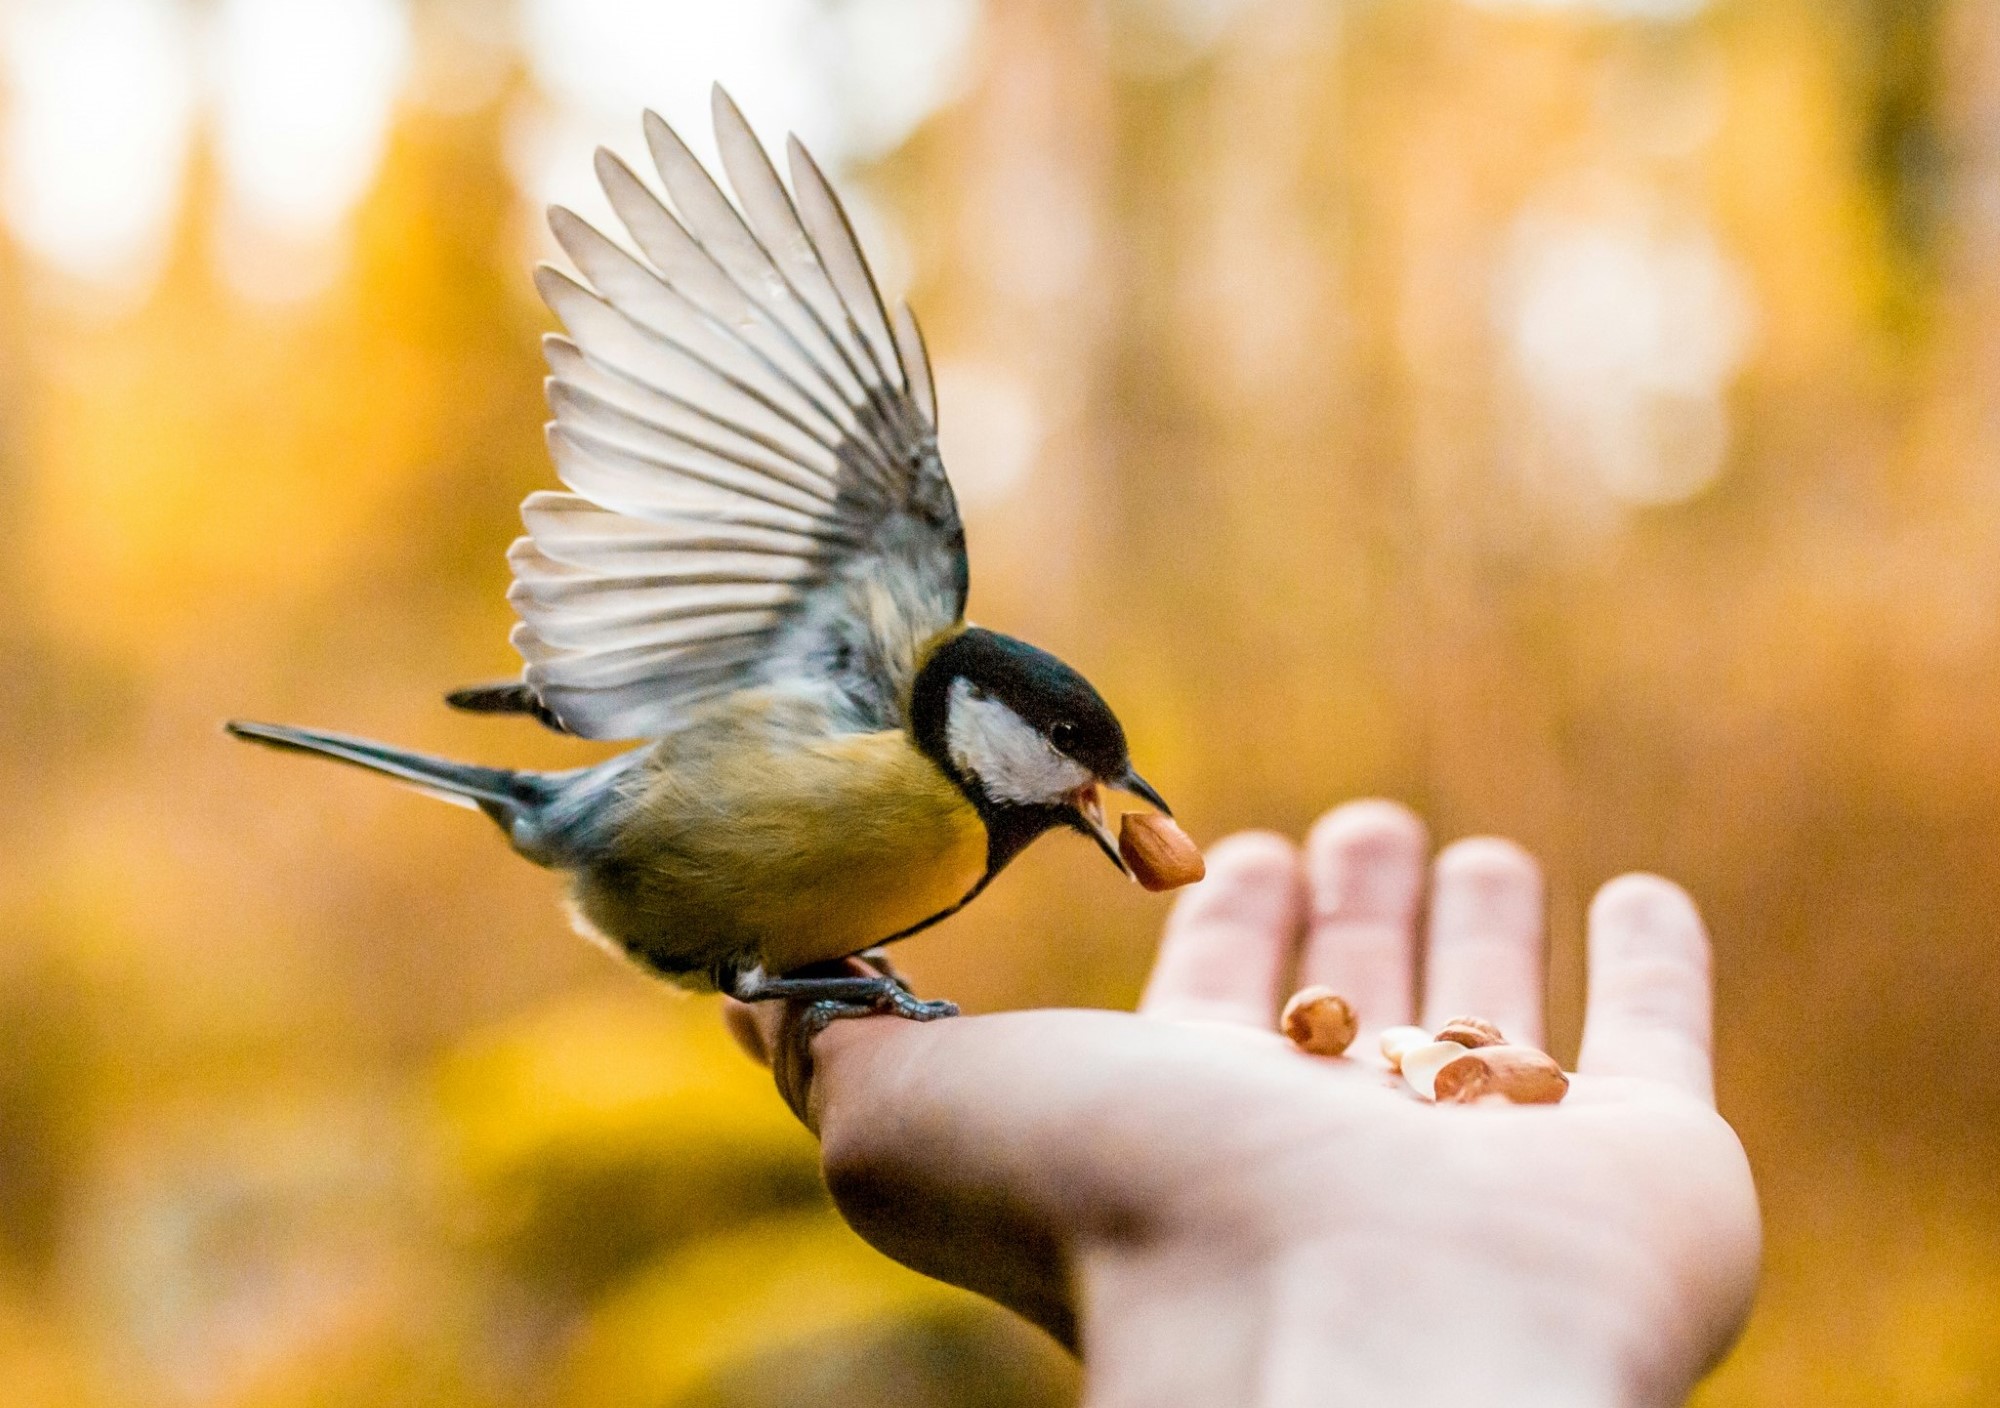 Fugl som spiser frø fra hånden